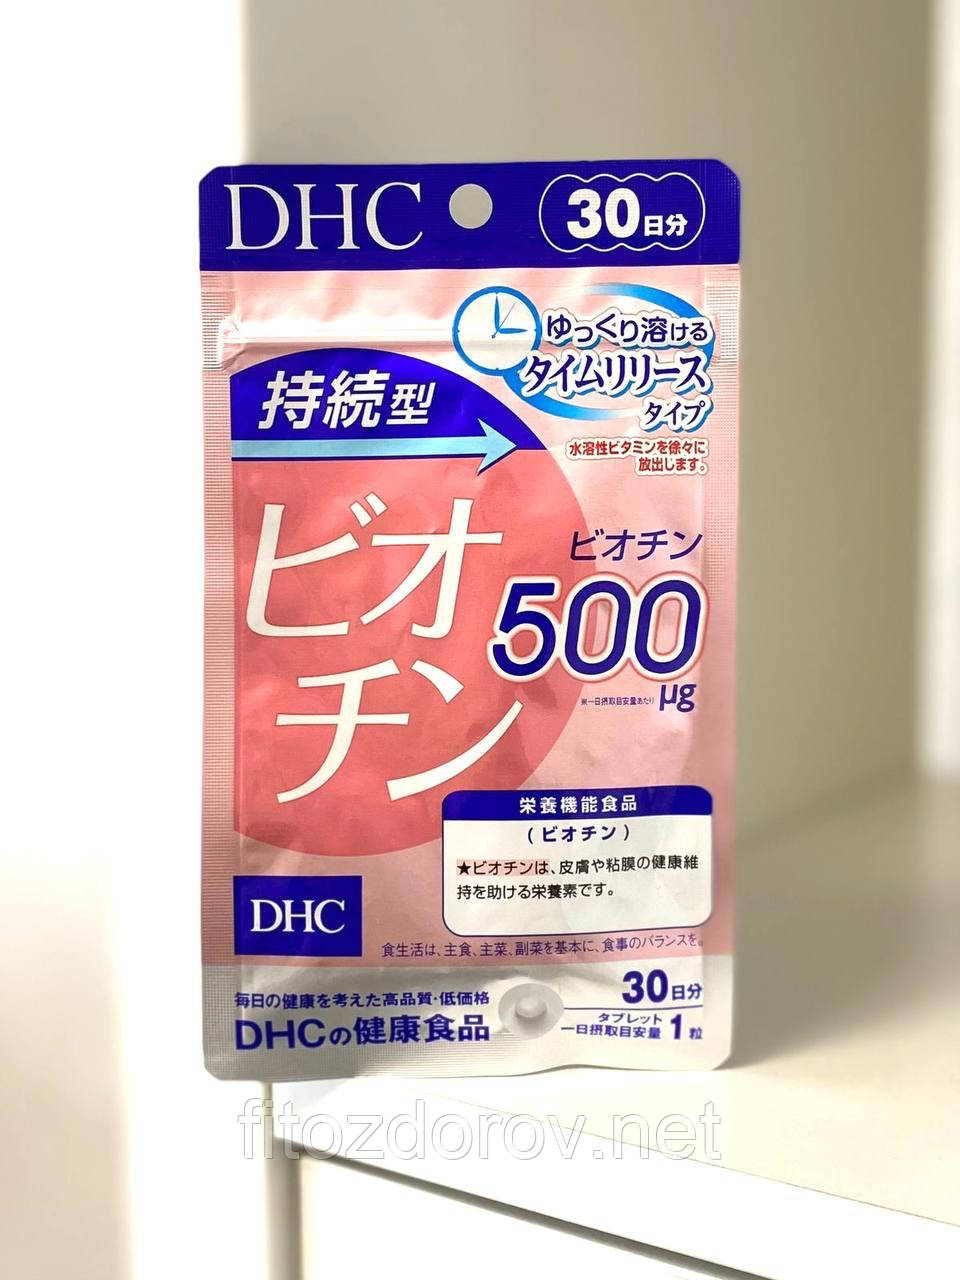 Біотин тривалої дії DHC на 30 днів